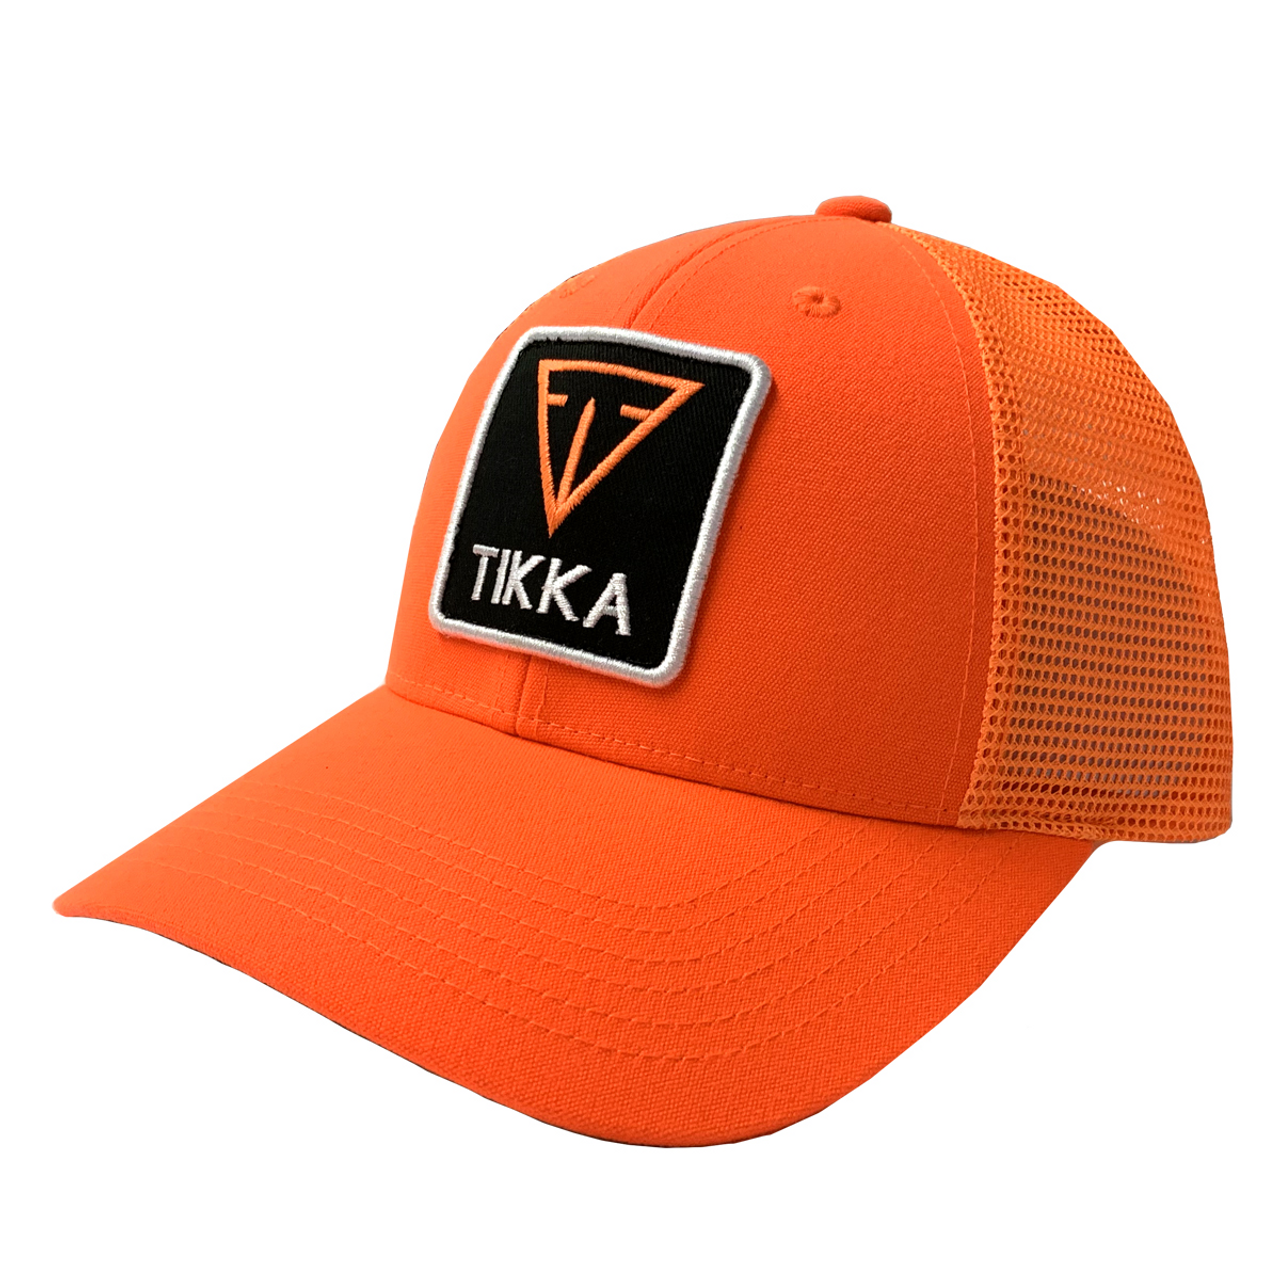 Tikka Mesh Structured Trucker Hat, Blaze Orange